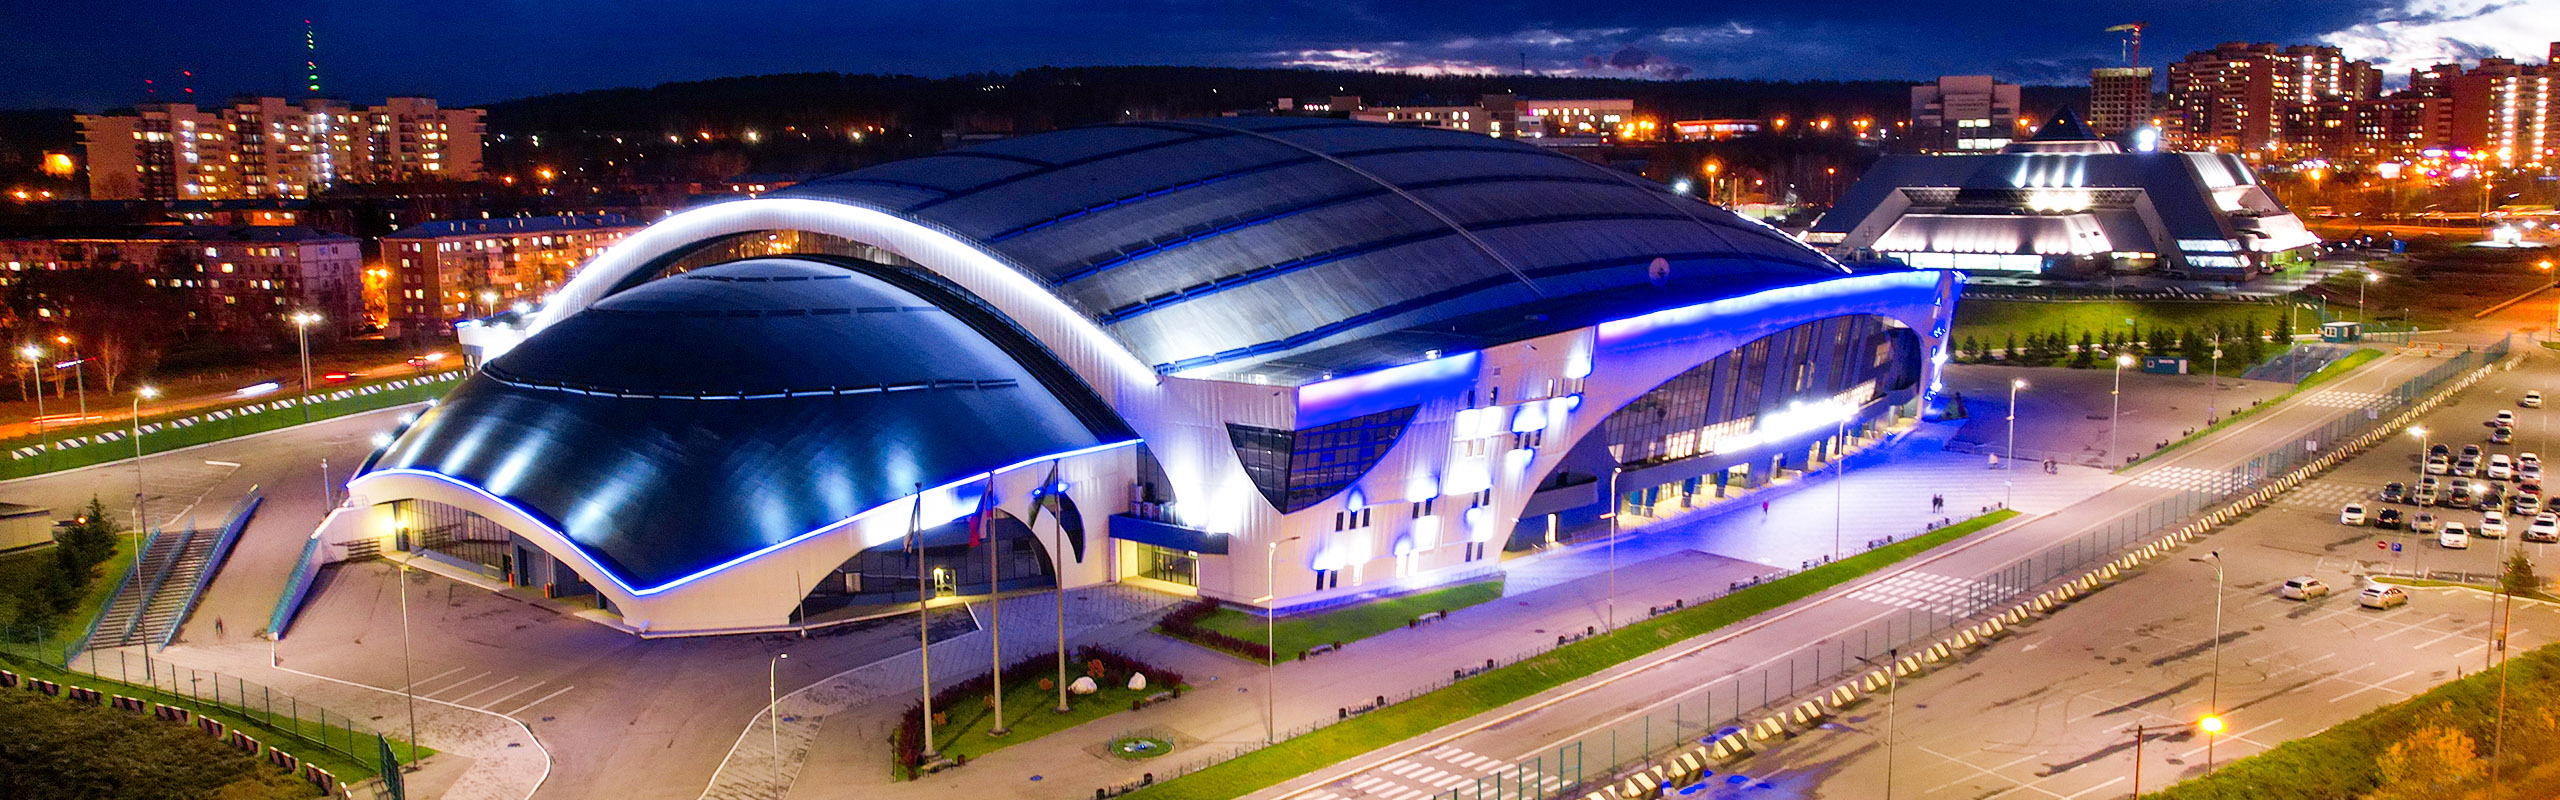 Архитектурная подсветка стадиона «Байкал» в Иркутске